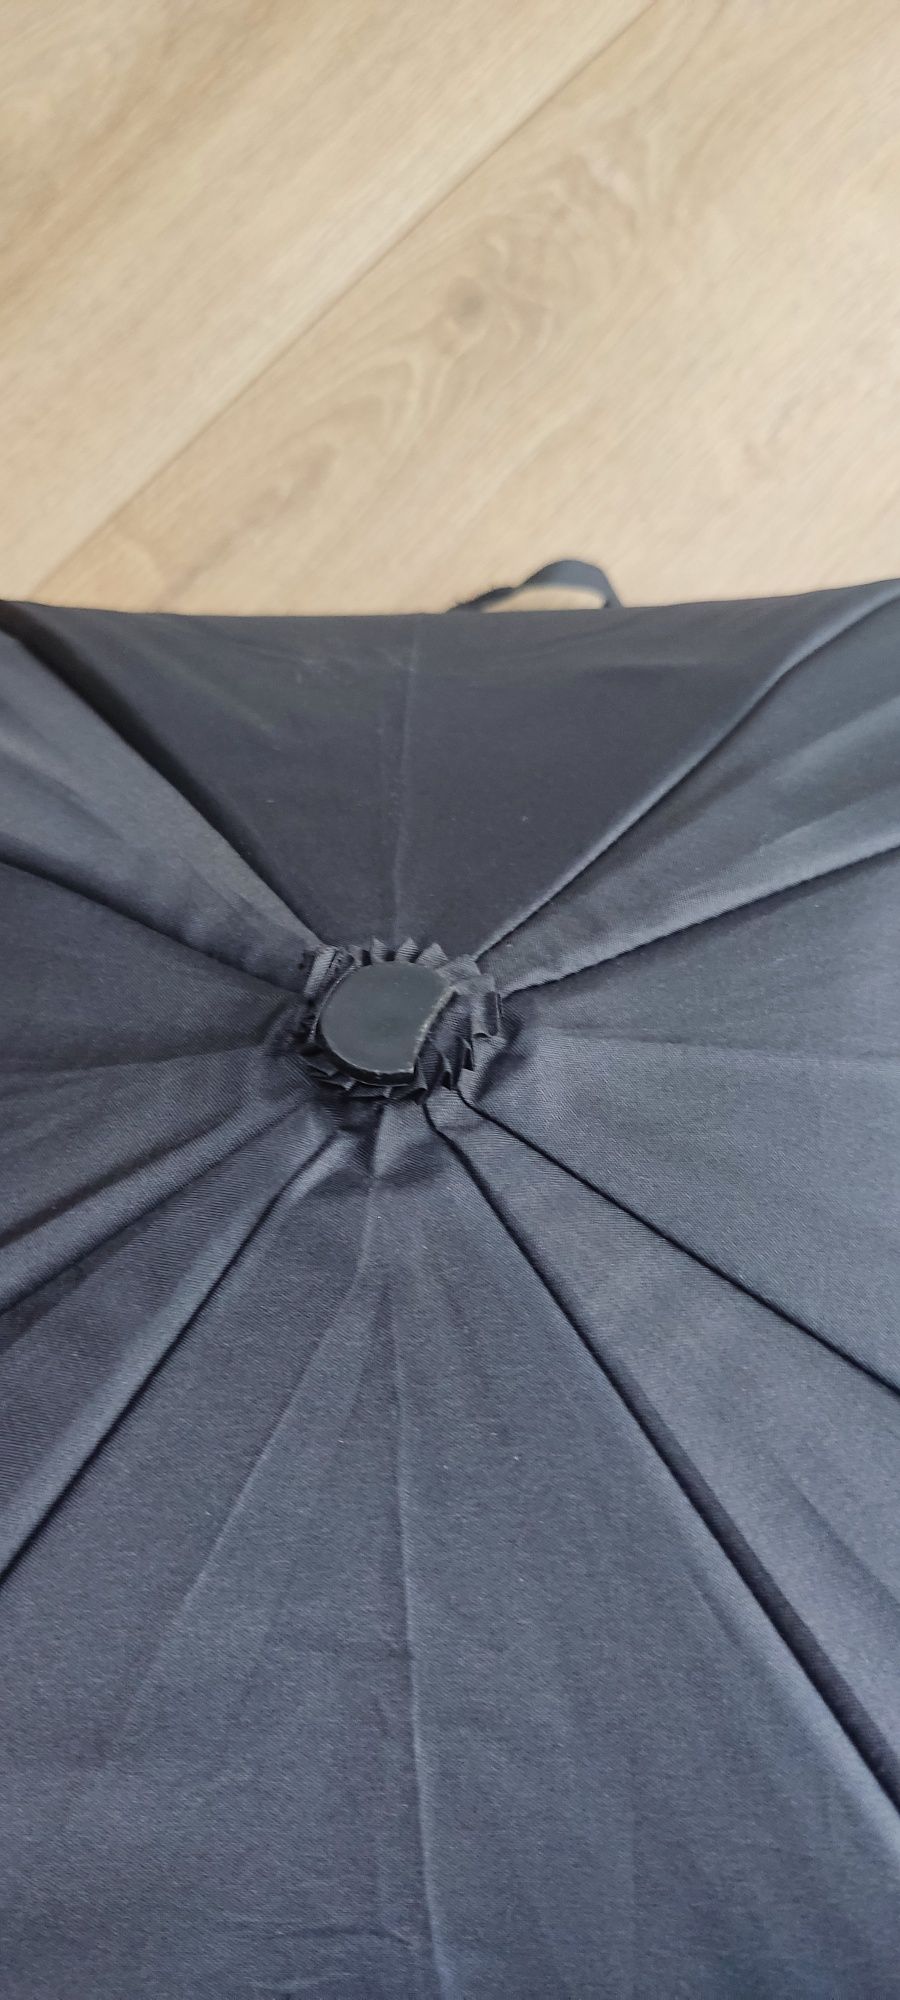 Shinesafe parasolka przeciwsłoneczna do wózka czarna